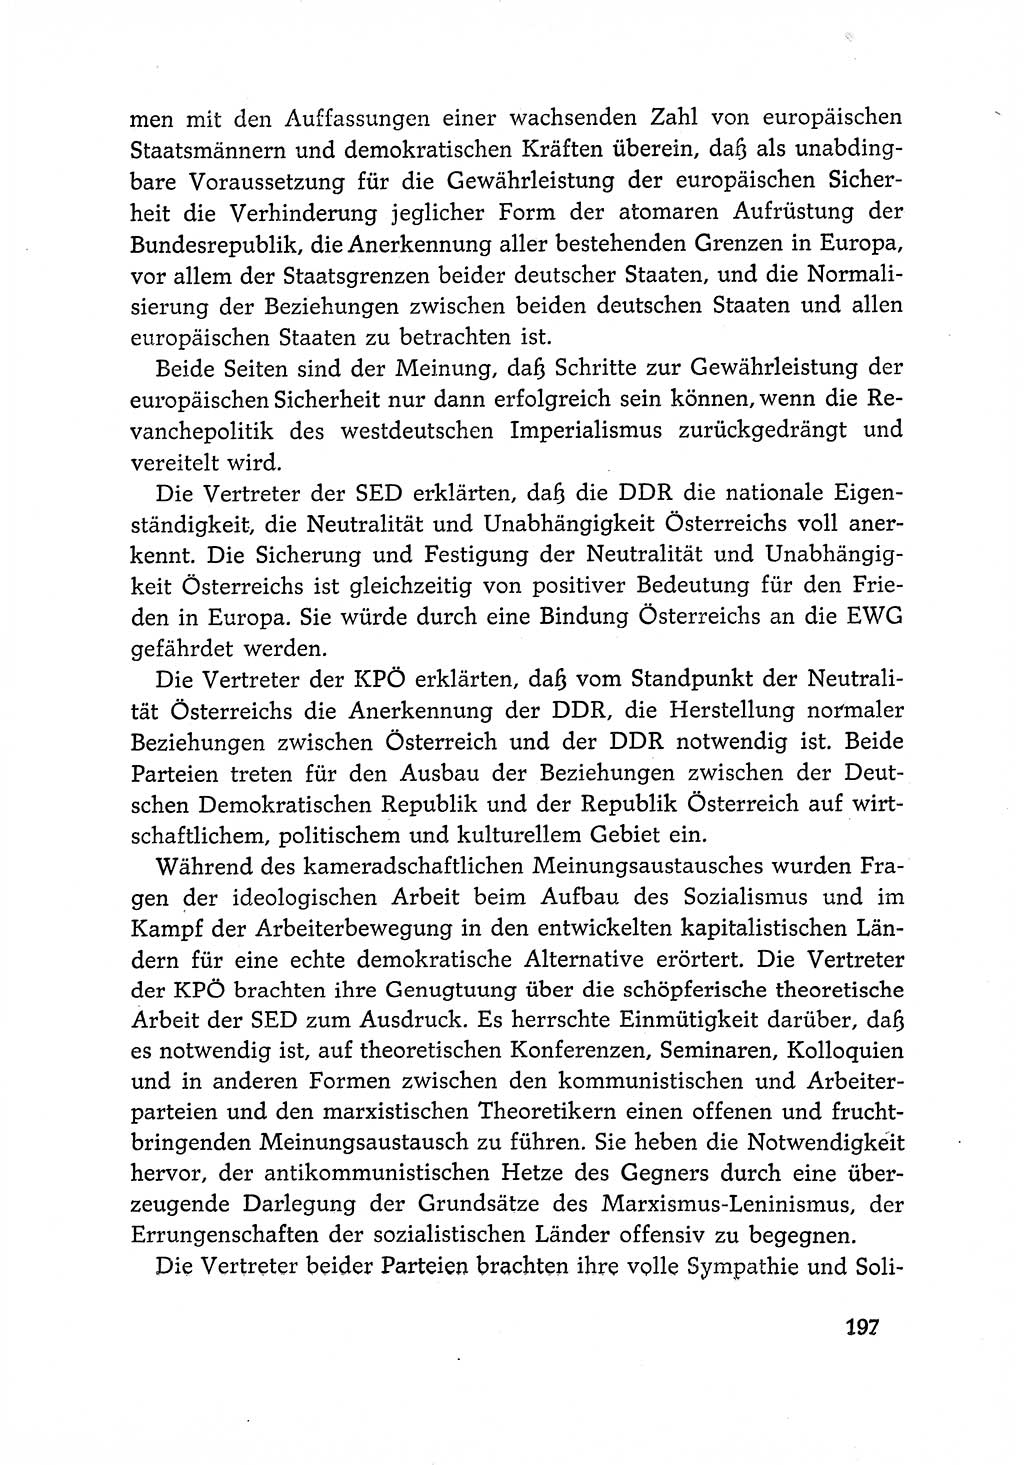 Dokumente der Sozialistischen Einheitspartei Deutschlands (SED) [Deutsche Demokratische Republik (DDR)] 1966-1967, Seite 197 (Dok. SED DDR 1966-1967, S. 197)